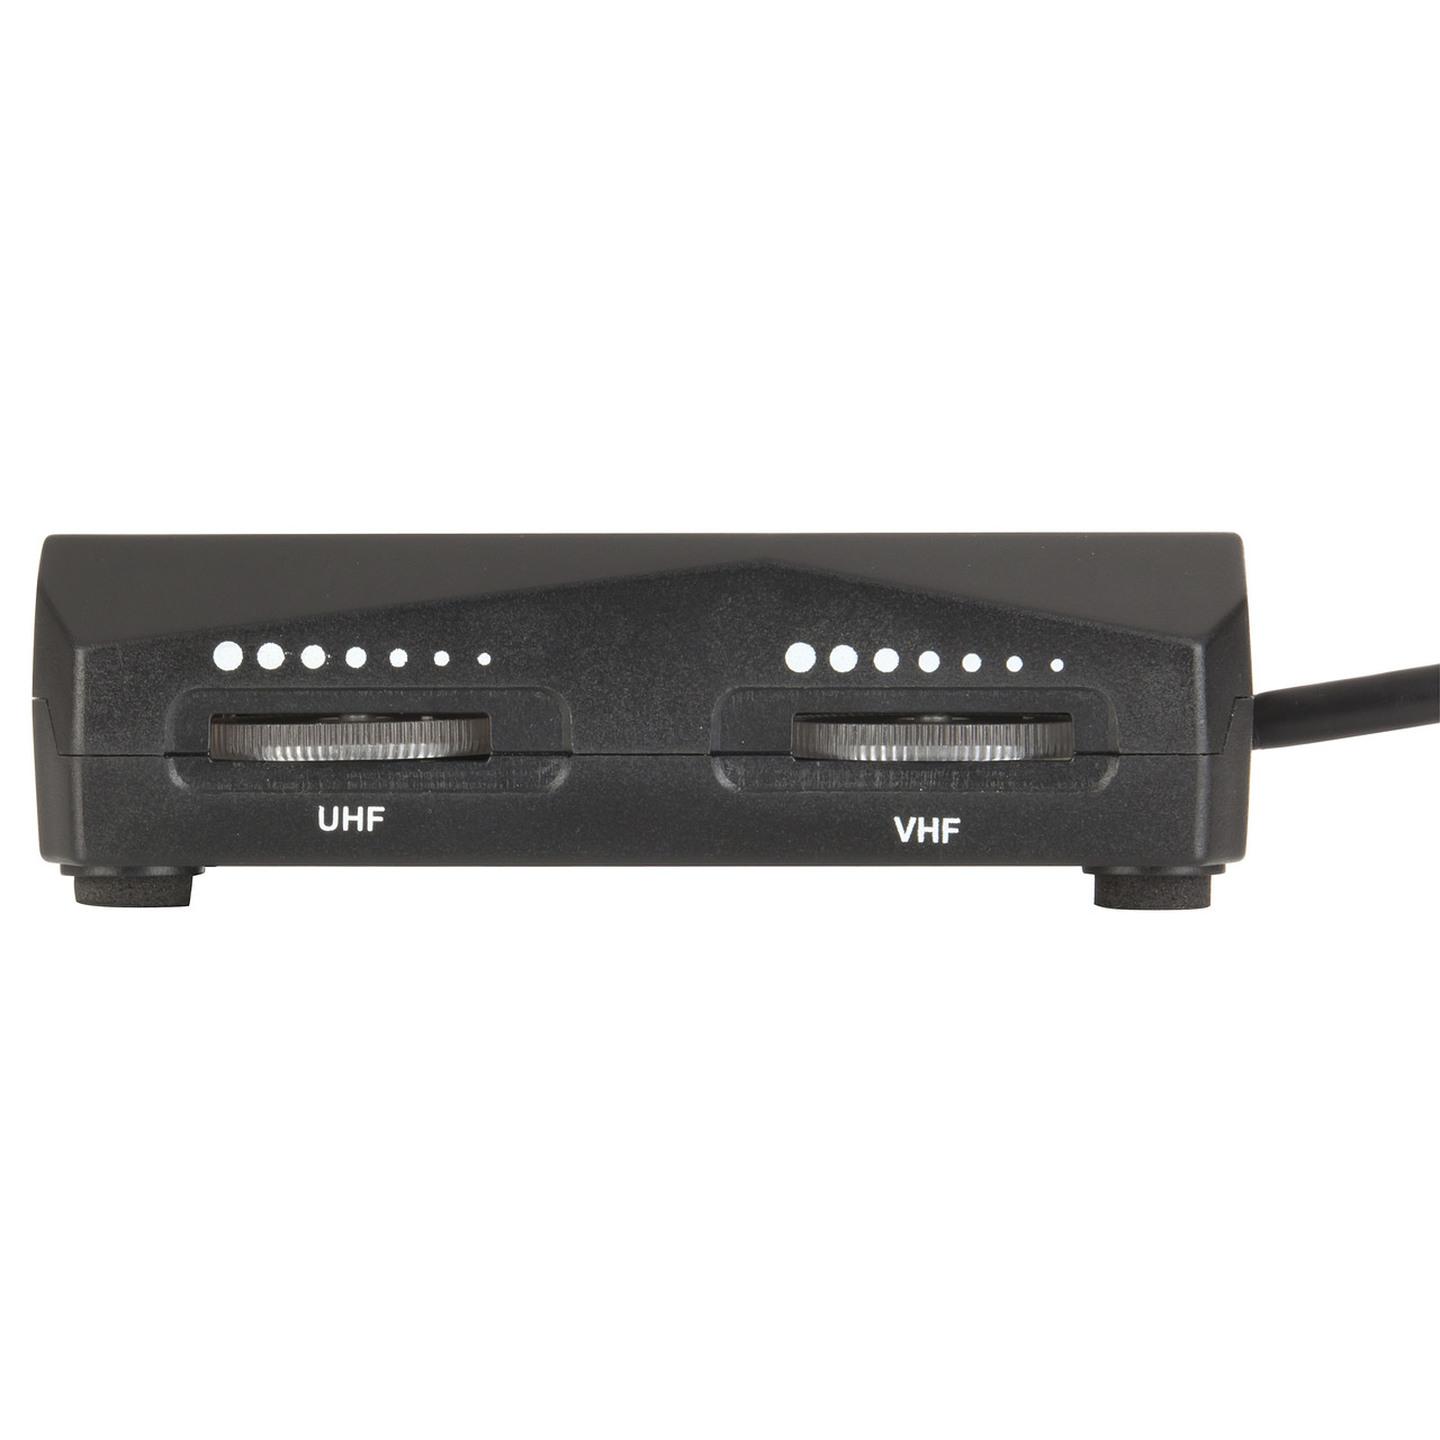 Indoor Digital TV Amplifier UHF/VHF